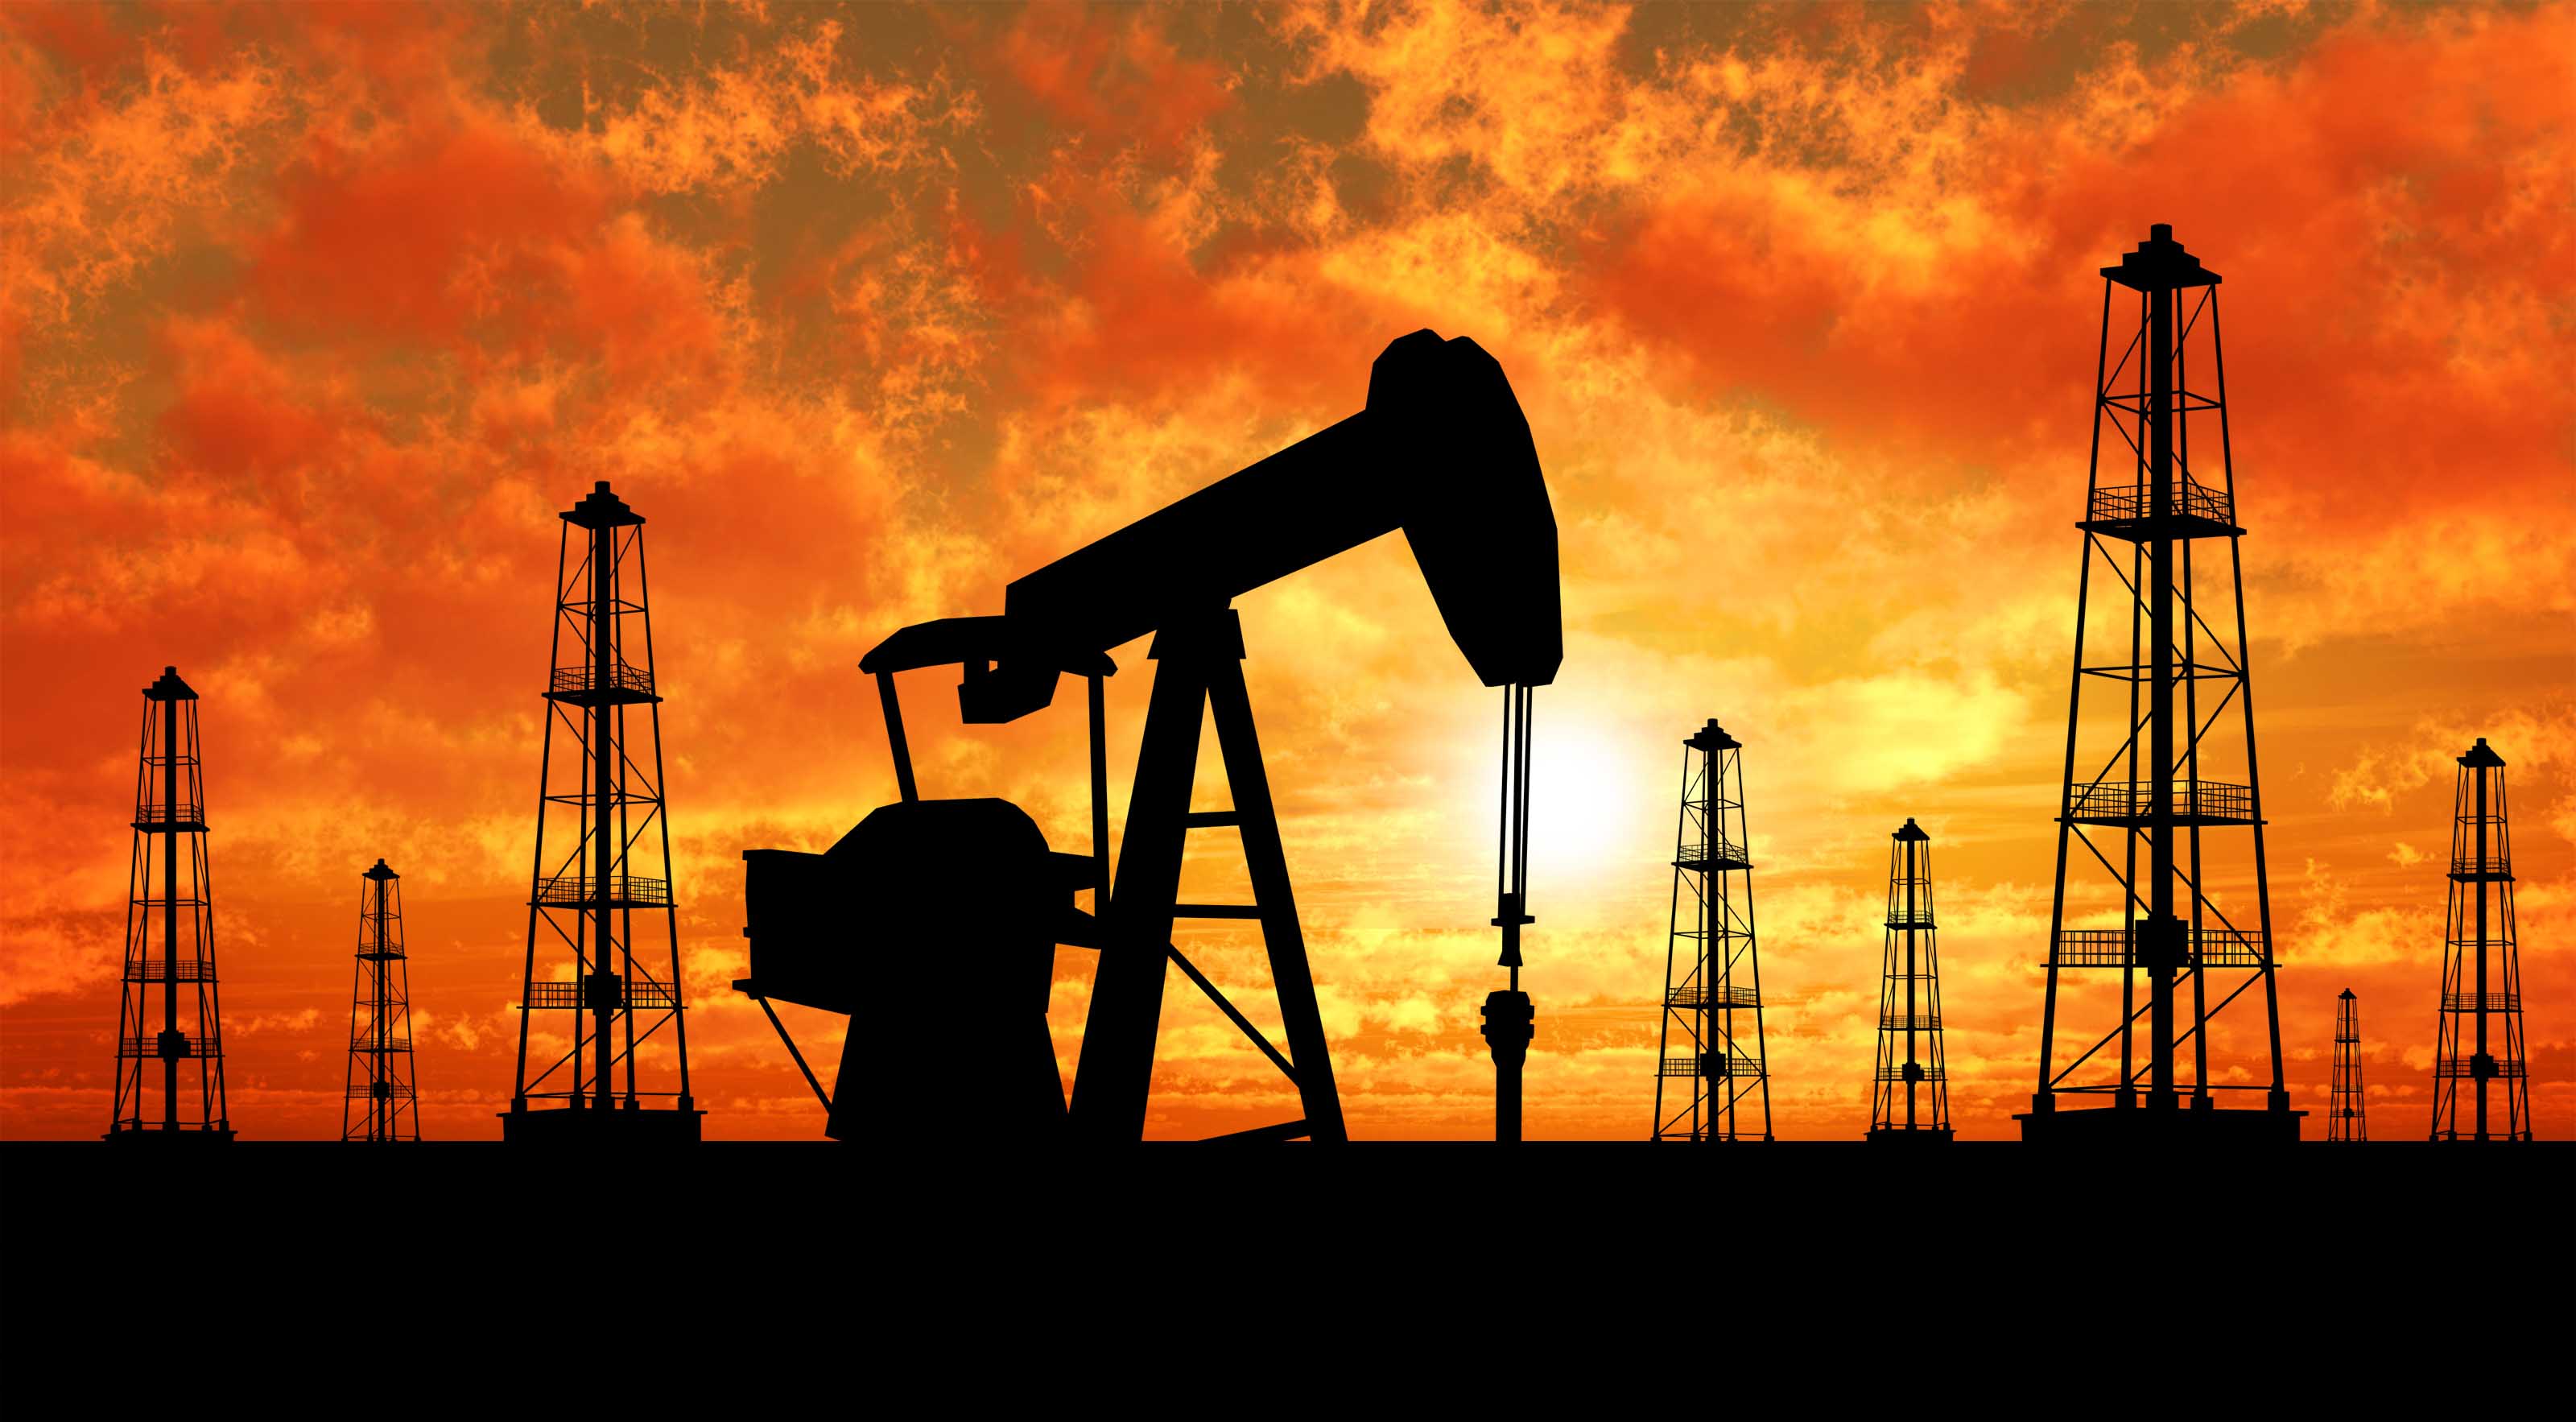 العراق: اوبك يجب الا تتحمل وحدها عبء خفض انتاج النفط